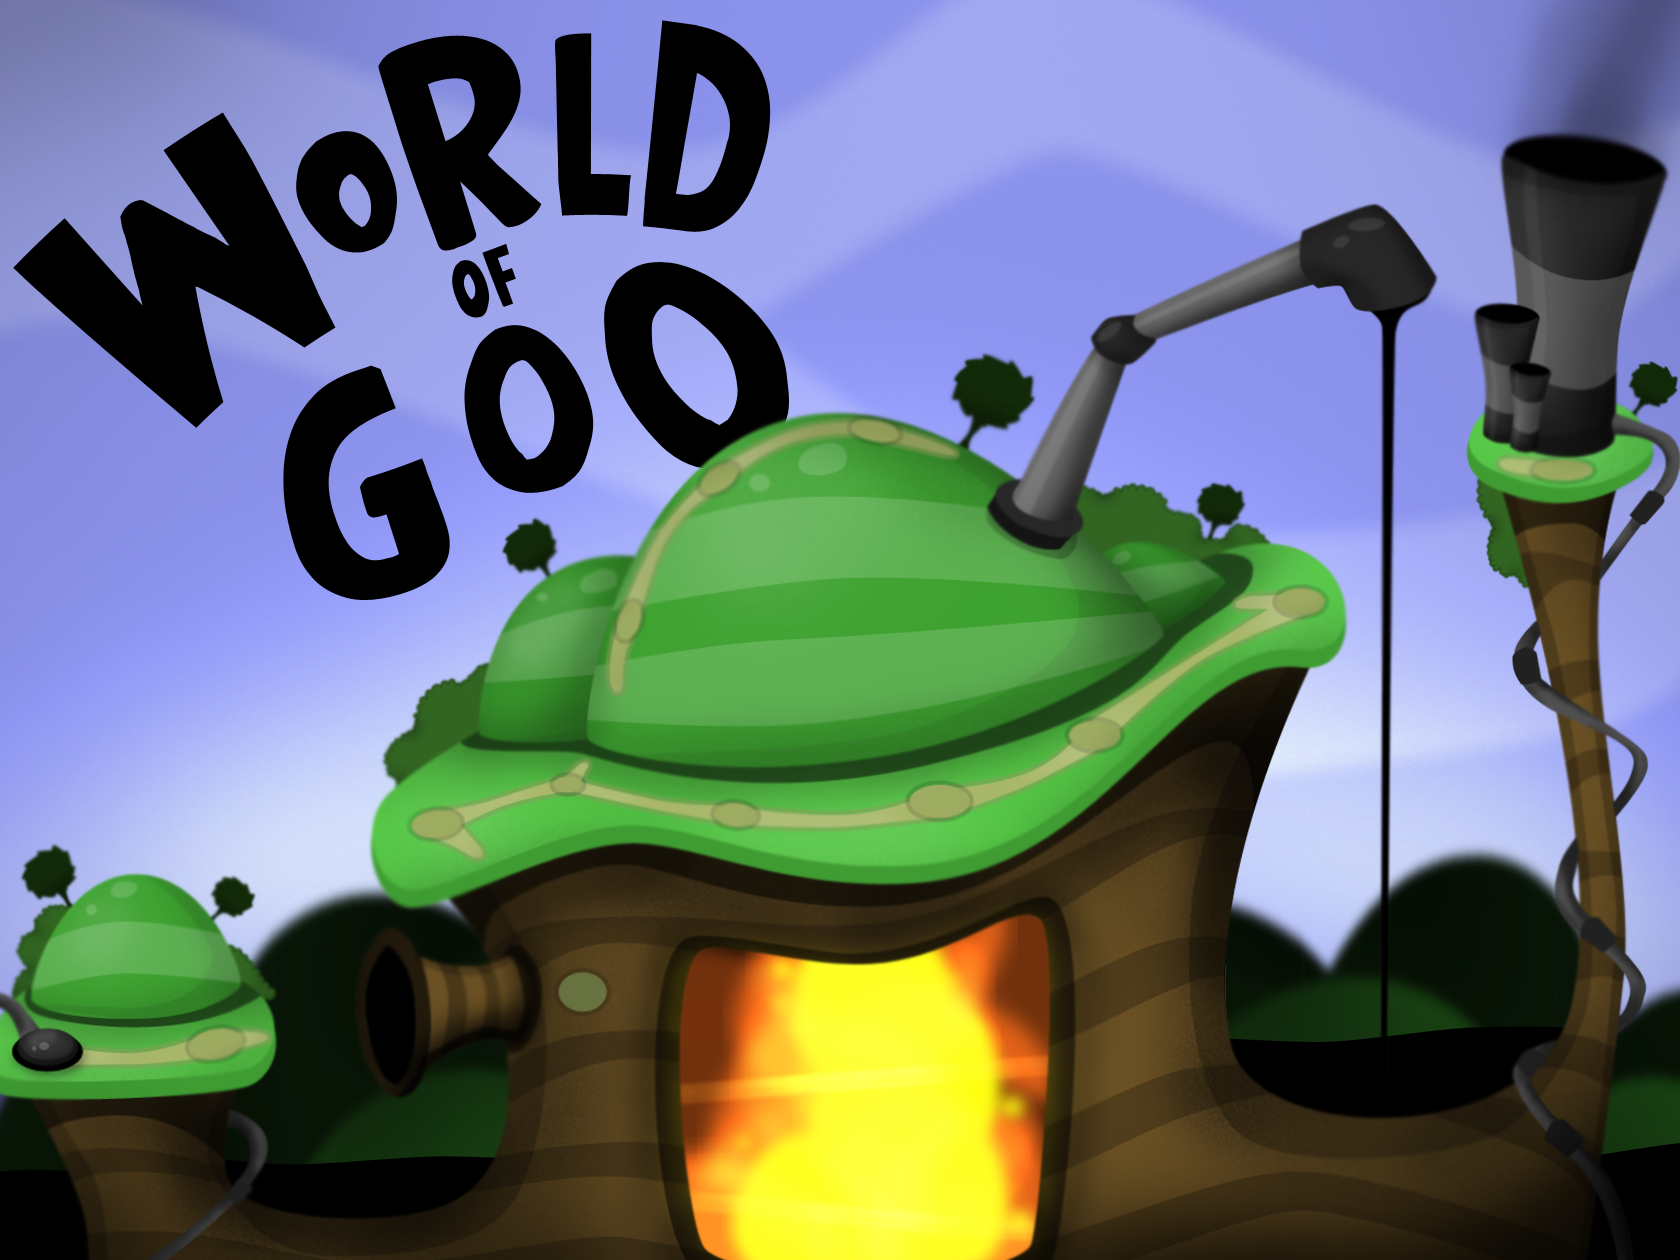 The world of goo extra terra rogue vhs trinity